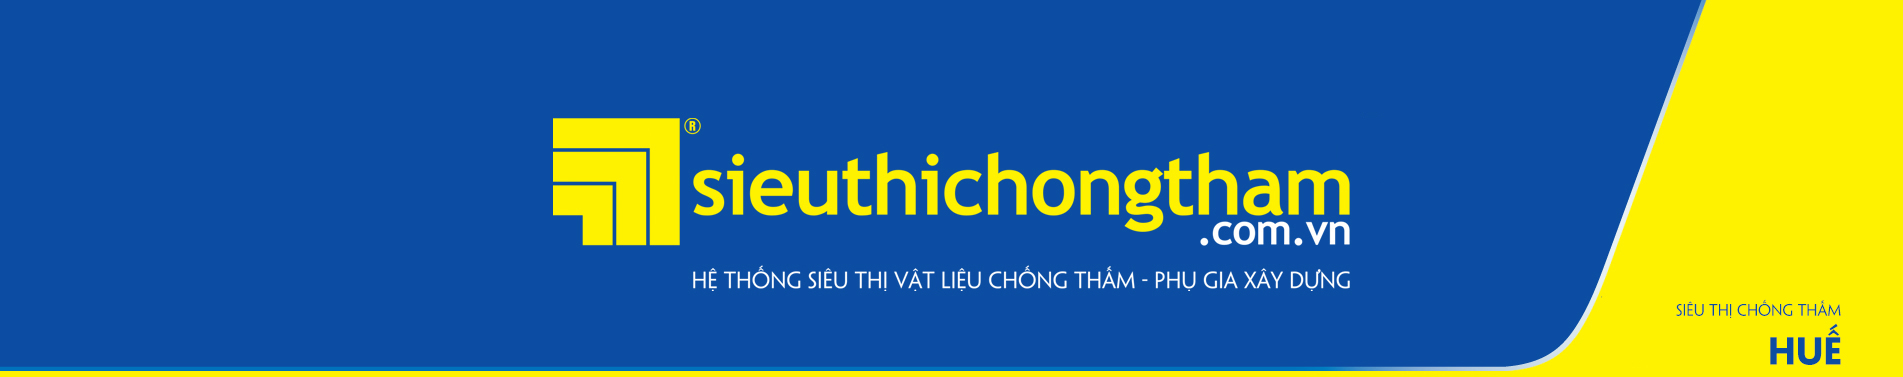 Sieu Thi Chong Tham Hue